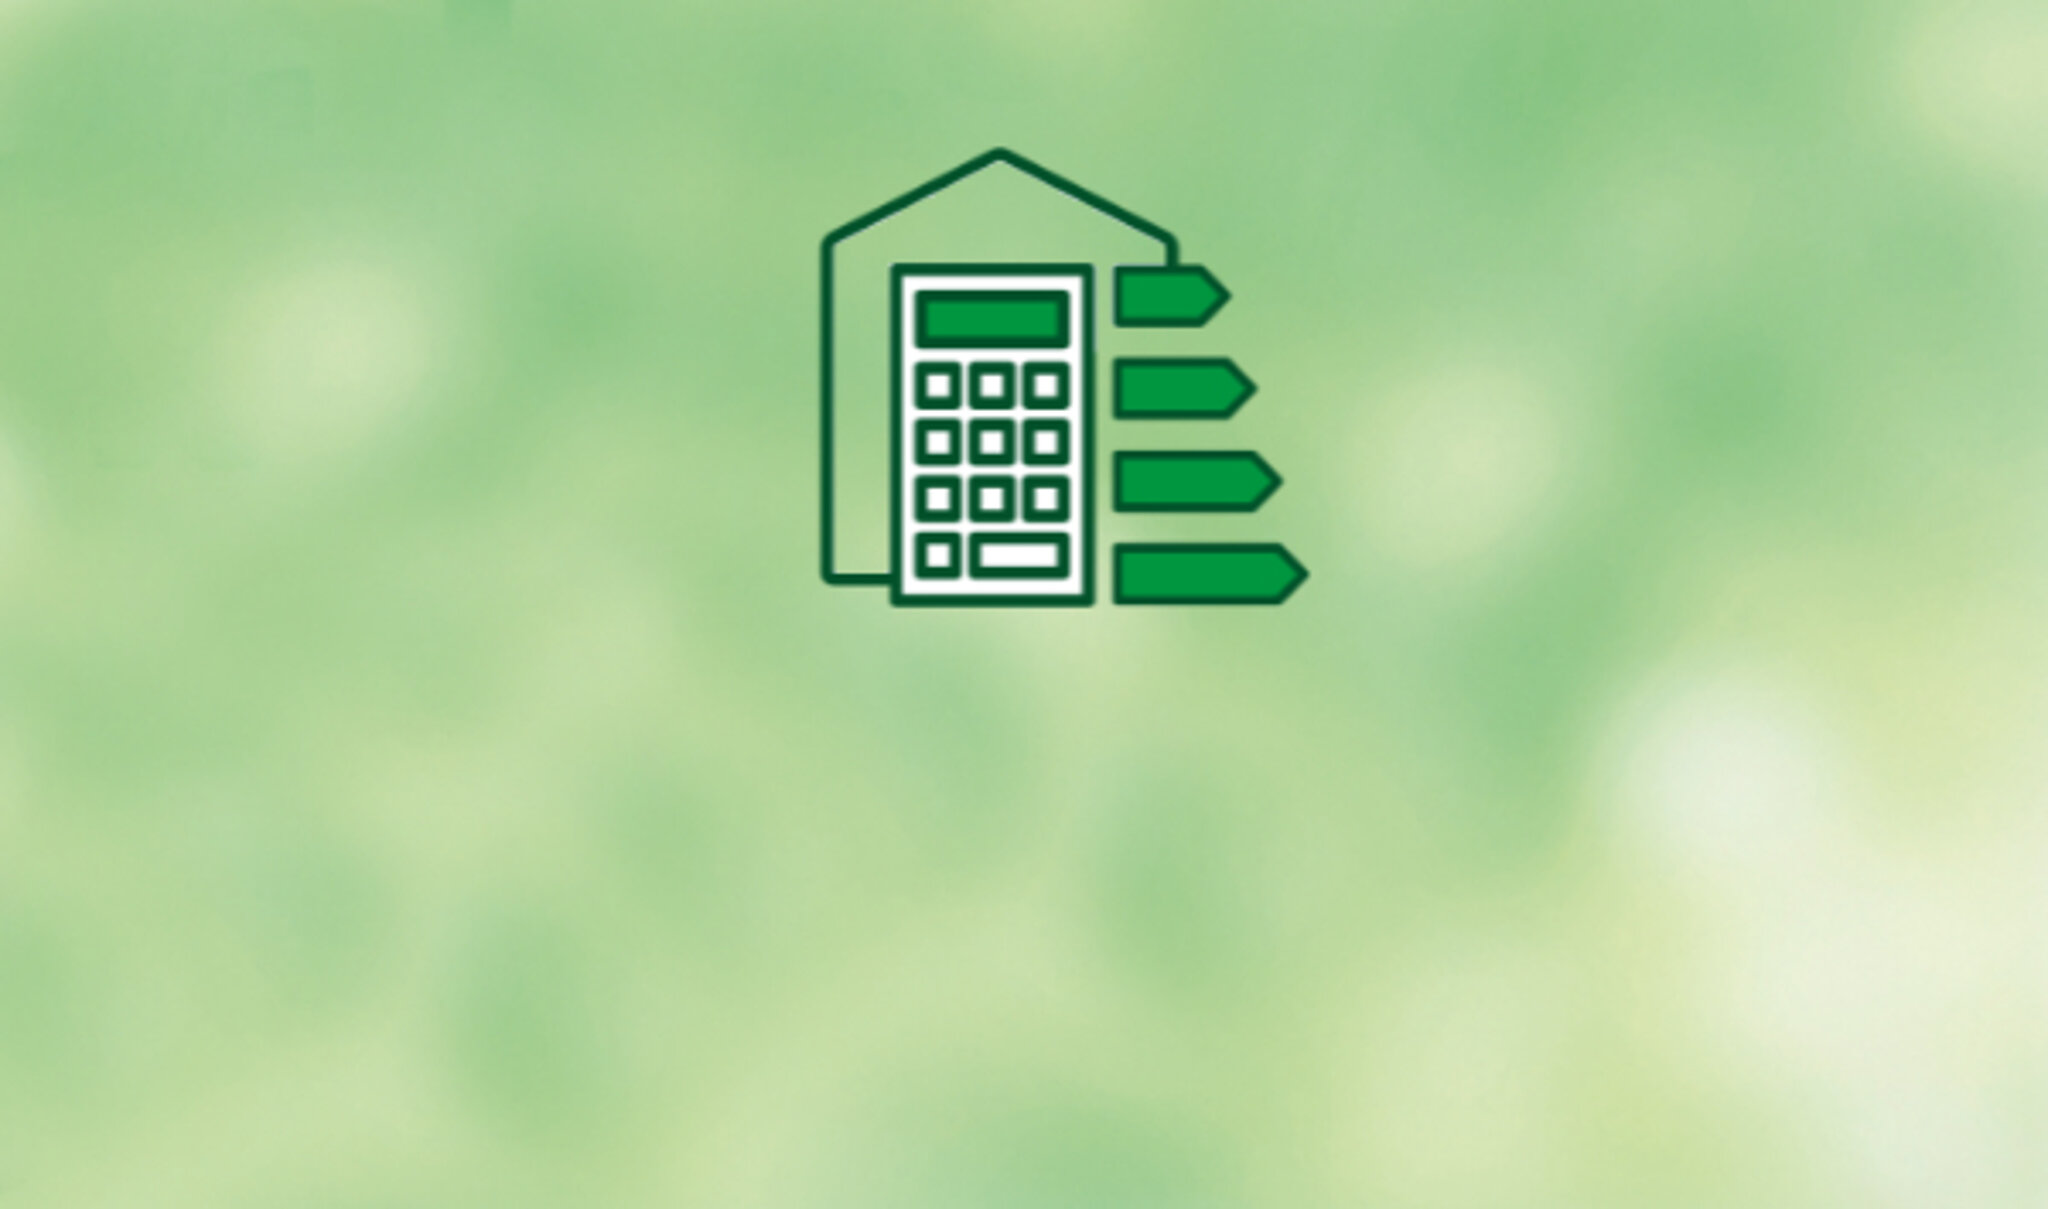 grüner Hintergrund mit Icon zum Thema Fördermittelauskunft